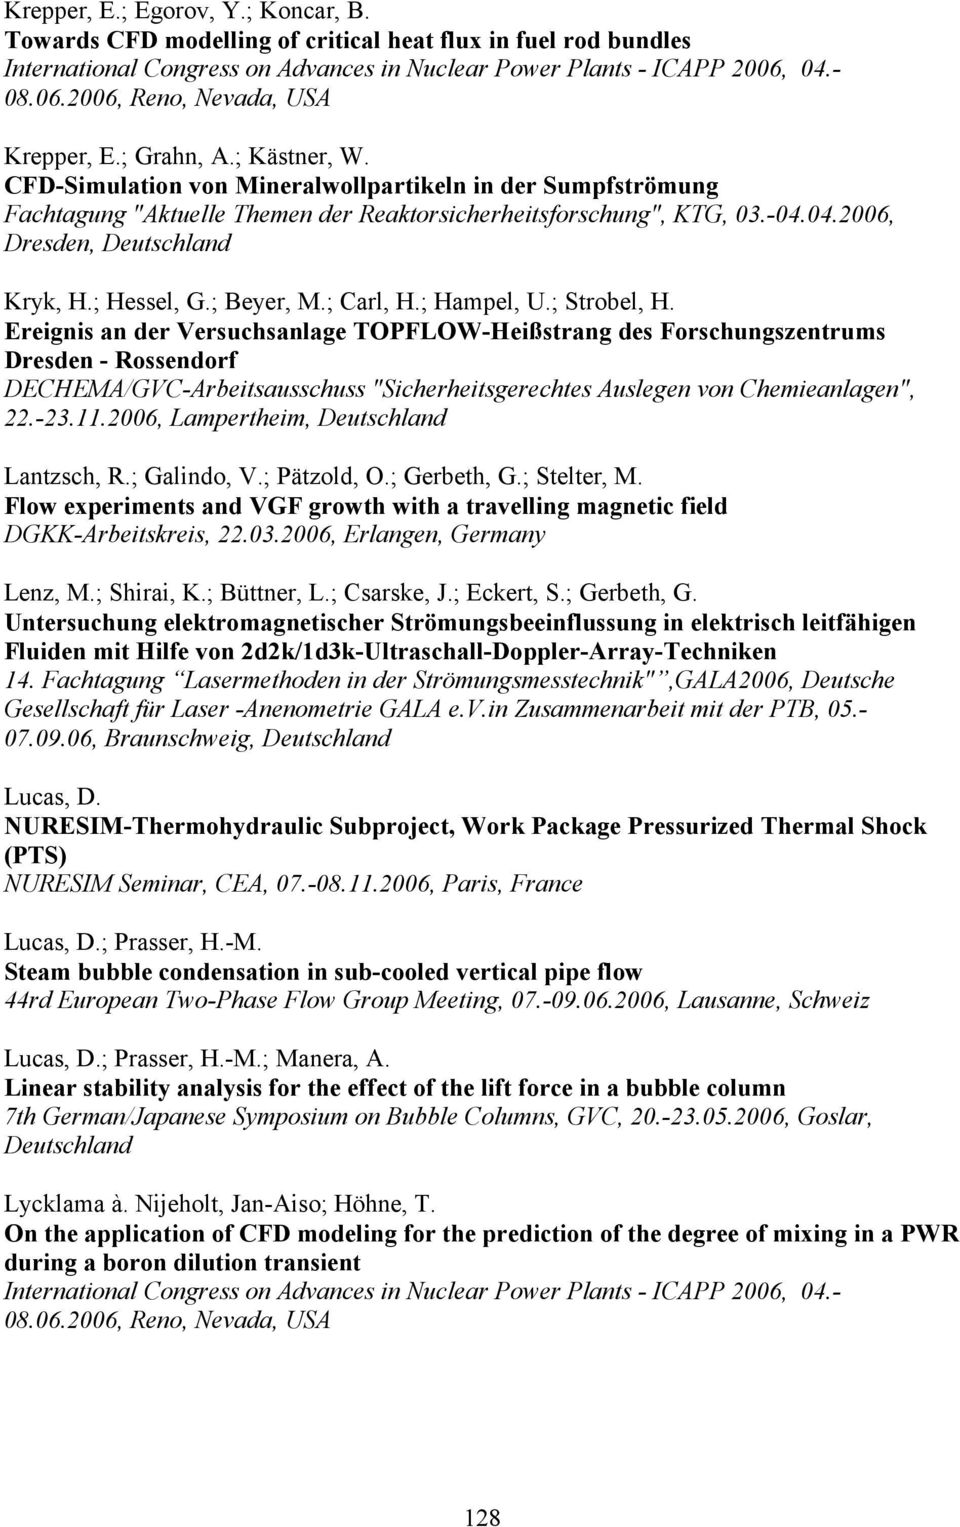 CFD-Simulation von Mineralwollpartikeln in der Sumpfströmung Fachtagung "Aktuelle Themen der Reaktorsicherheitsforschung", KTG, 03.-04.04.2006, Dresden, Deutschland Kryk, H.; Hessel, G.; Beyer, M.